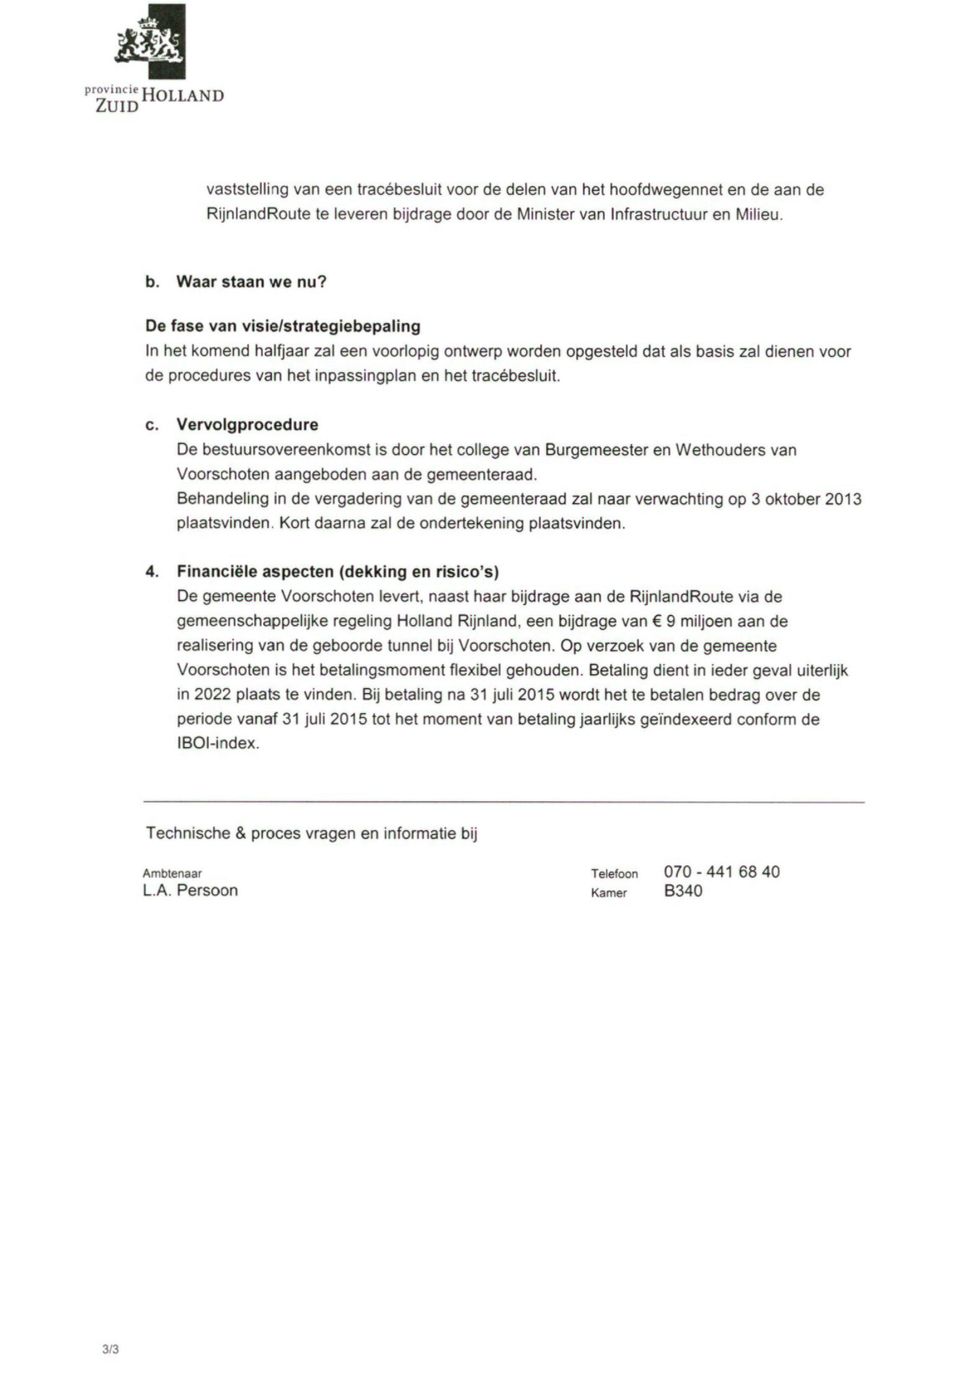 Vervolgprocedure De bestuursovereenkomst is door het college van Burgemeesler en Wethouders van Voorscholen aangeboden aan de gemeenteraad.